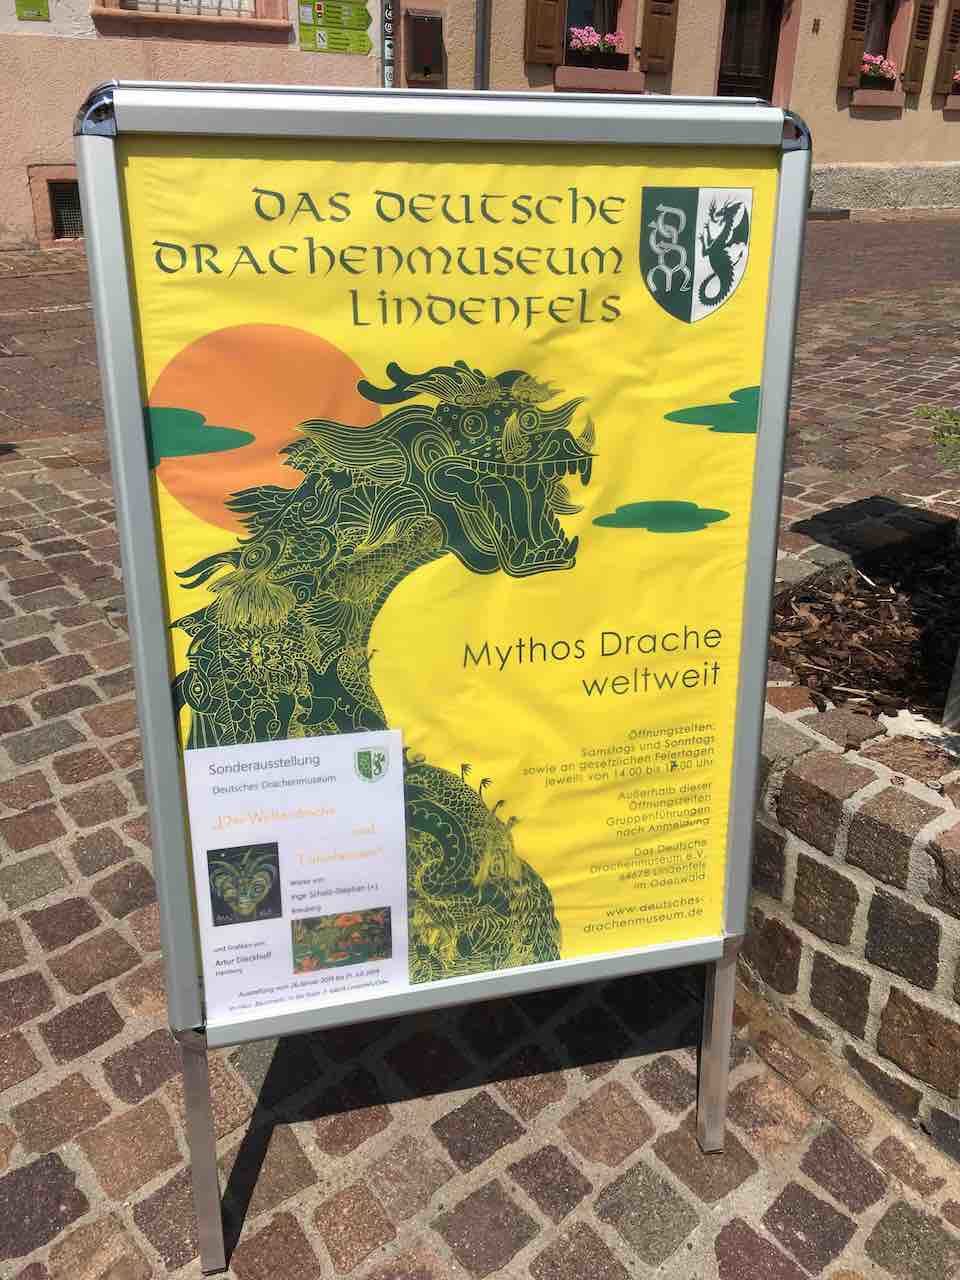 Das Deutsche Drachenmuseum skylt.